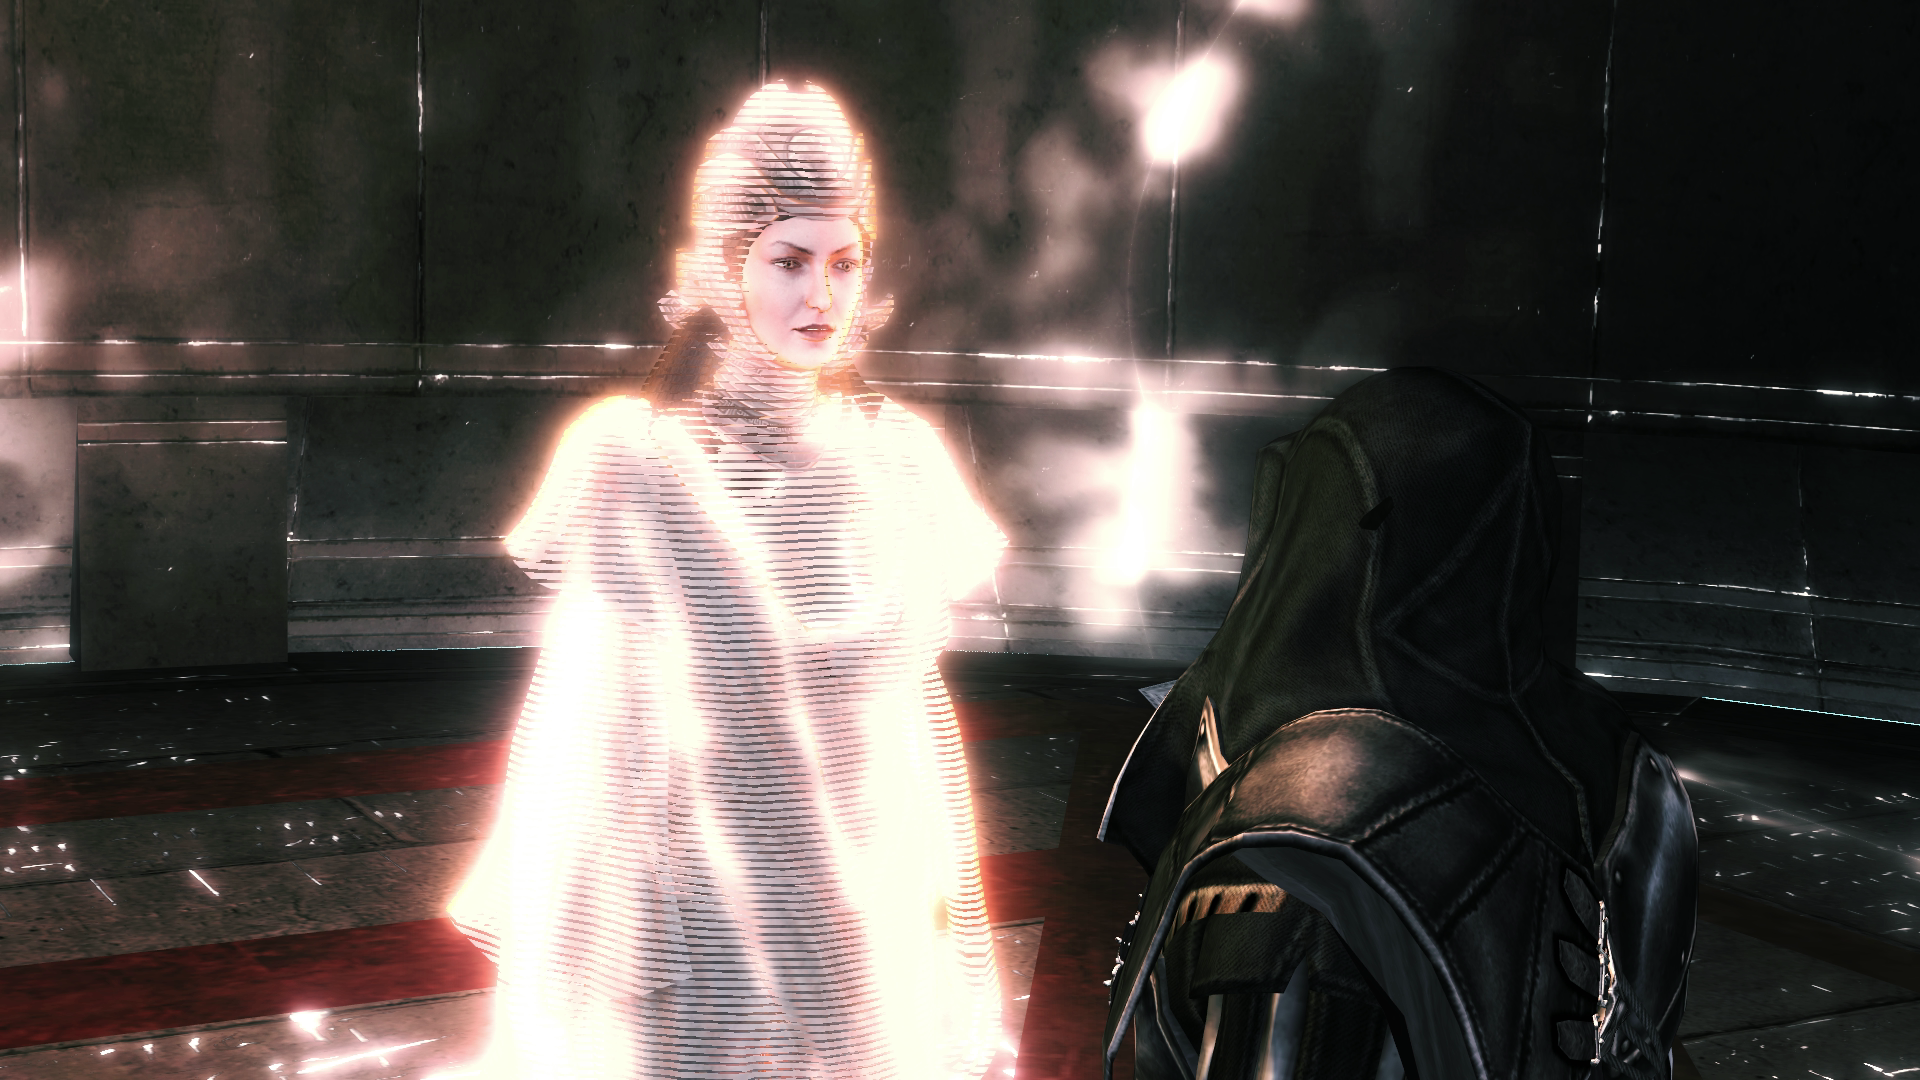 Minerva speaking with Ezio Auditore in the Vault